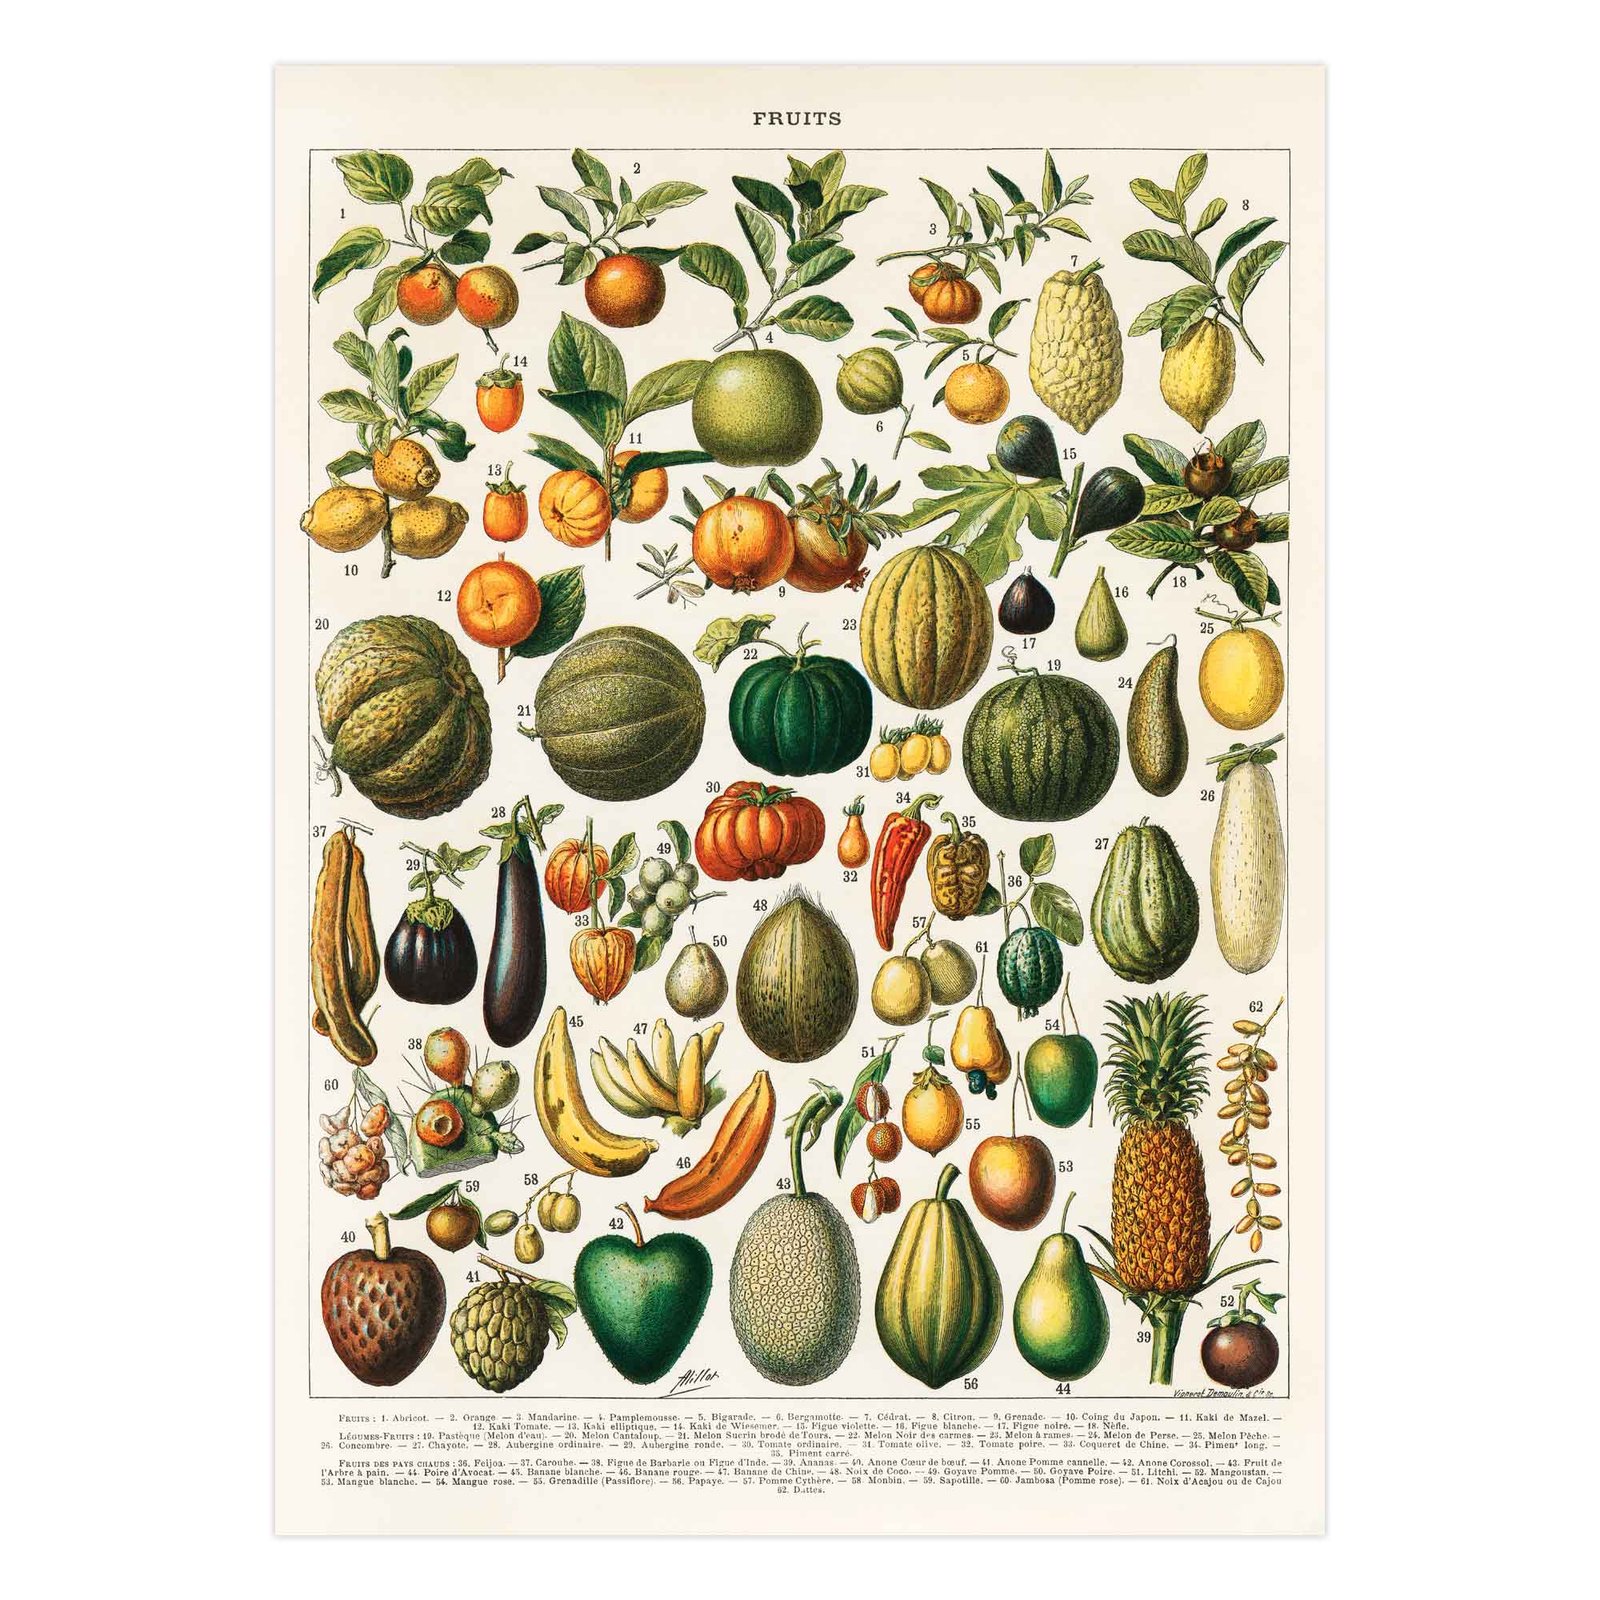 98 paveikslas virtuveje ant drobes - Vaisių ir daržovių infografikas